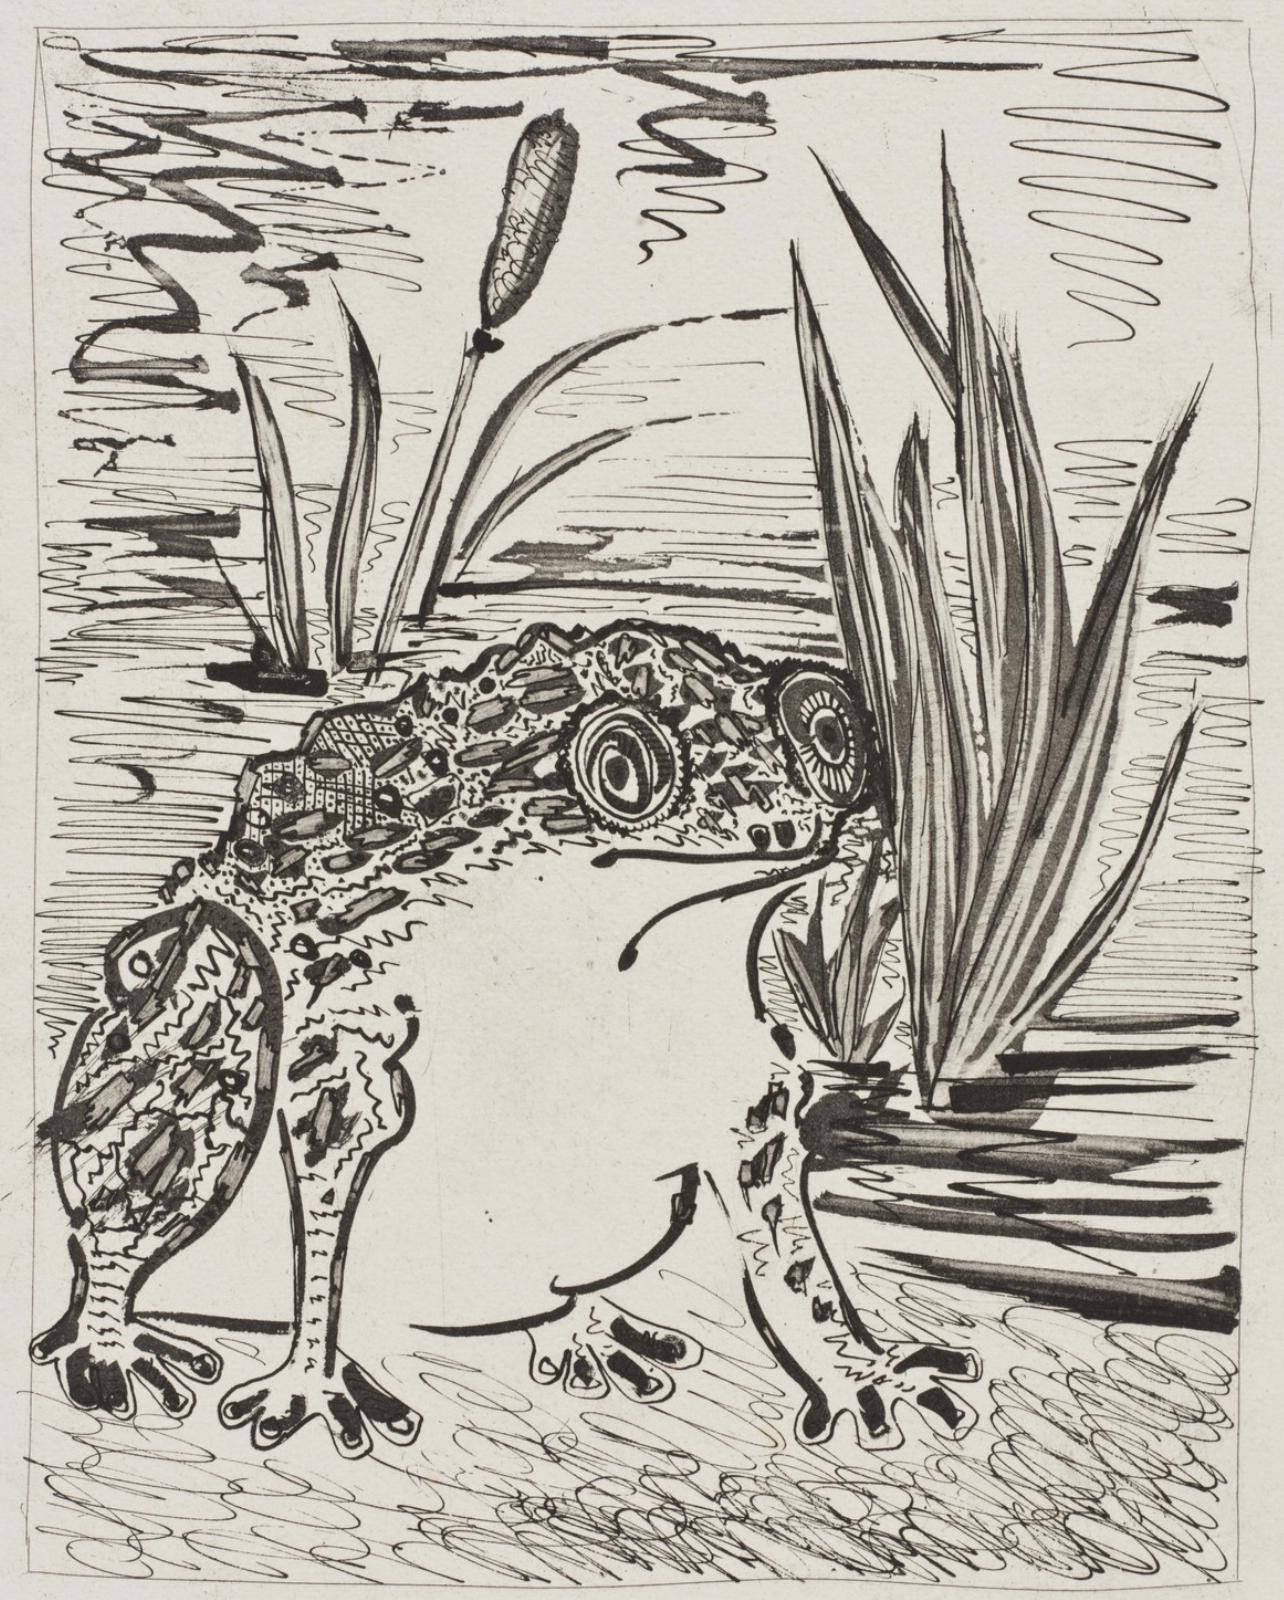 Pablo Picasso Landscape Print - Picasso, Le Crapaud, Histoire naturelle (after)